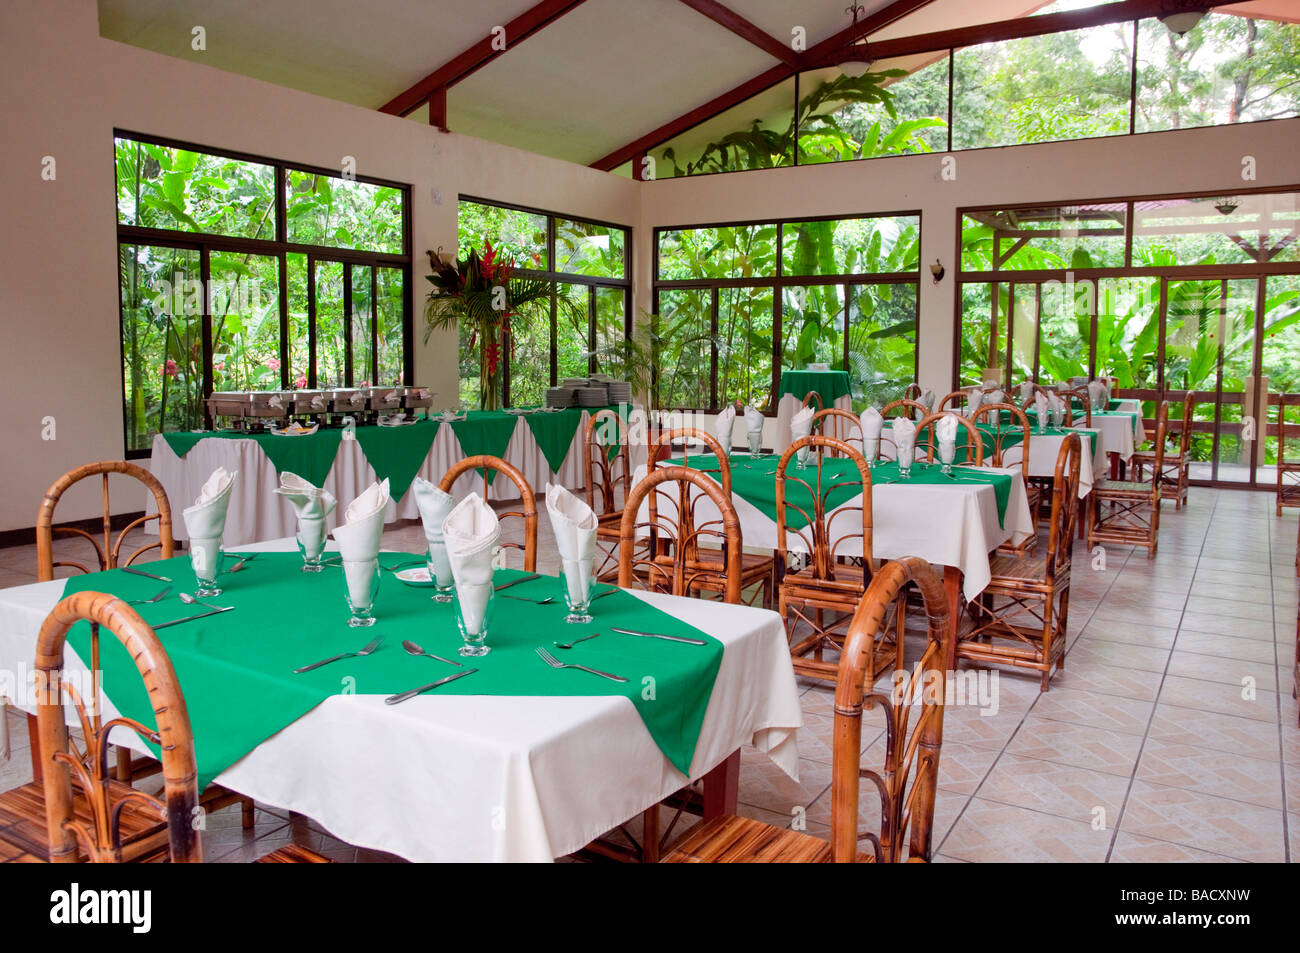 Das Interieur des Restaurants Kapok-Baum im östlichen Costa Rica Mittelamerika Stockfoto